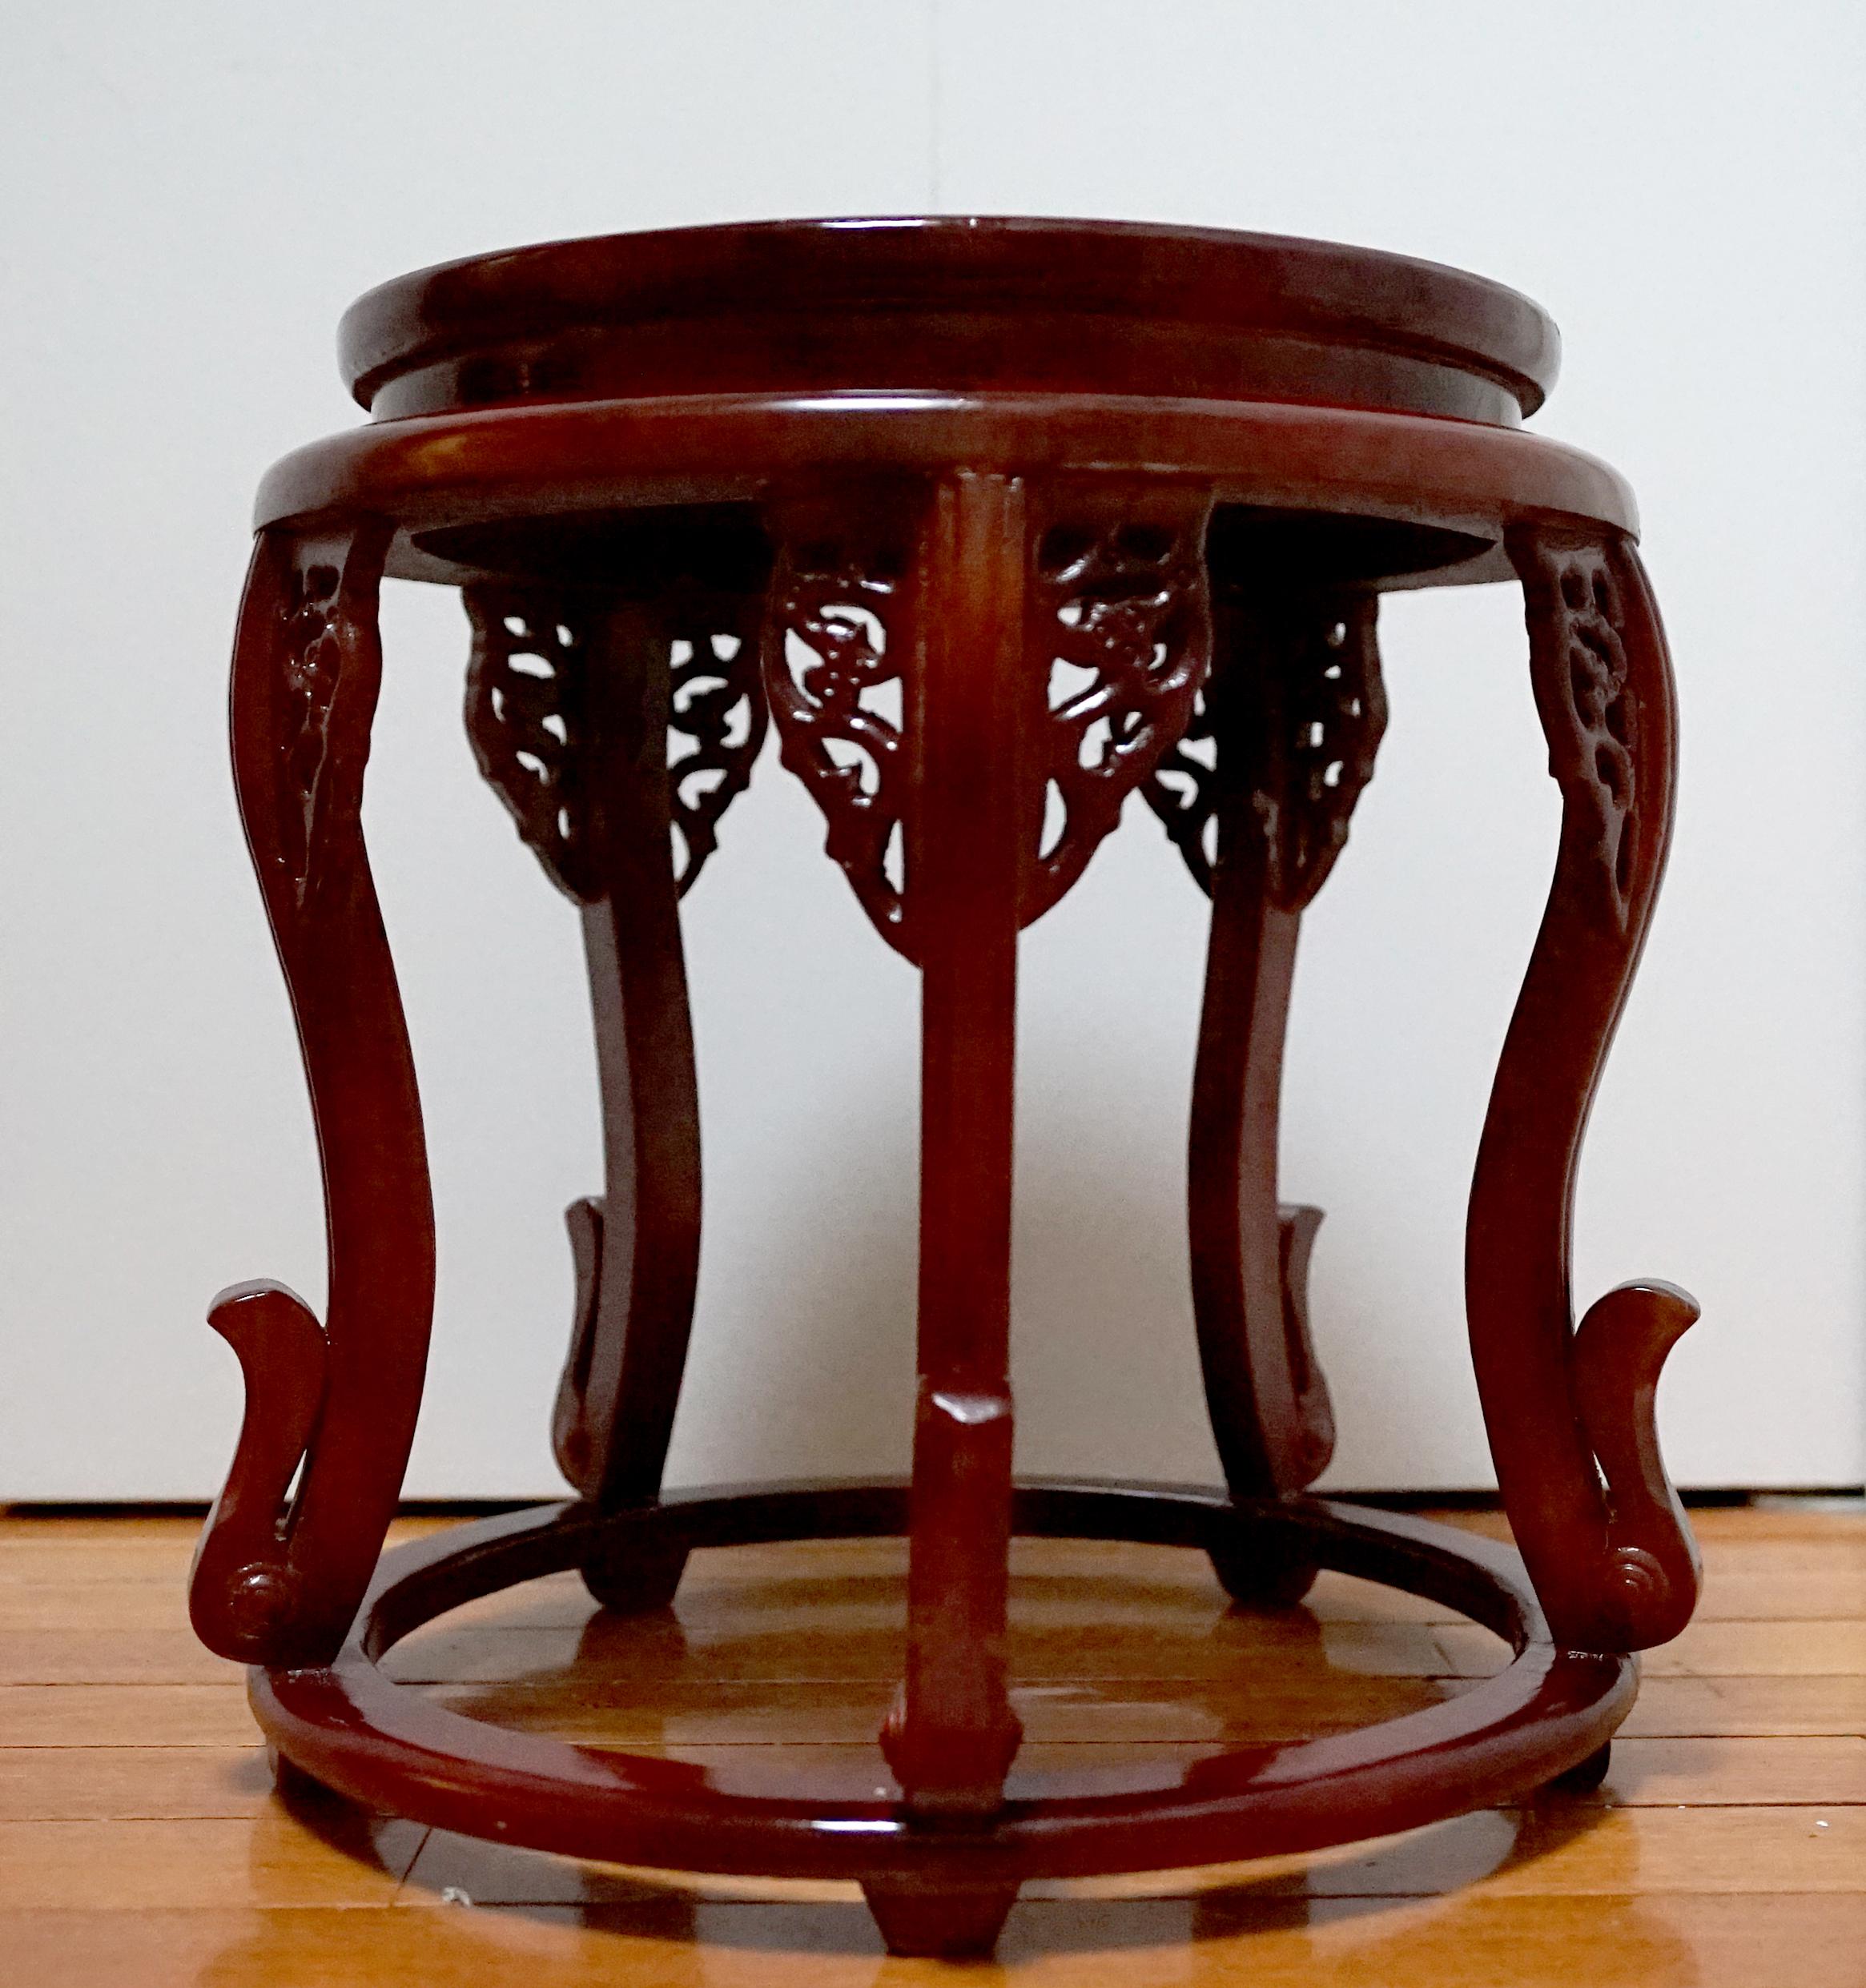 Die Form dieses runden Tisches aus Palisanderholz mit zarten Laubsägearbeiten und anmutigen Beinen ist selten und einen zweiten Blick wert. Das herausragende Merkmal neben den Designdetails ist die dunkle kirschfarbene Patina, die nur mit dem Alter